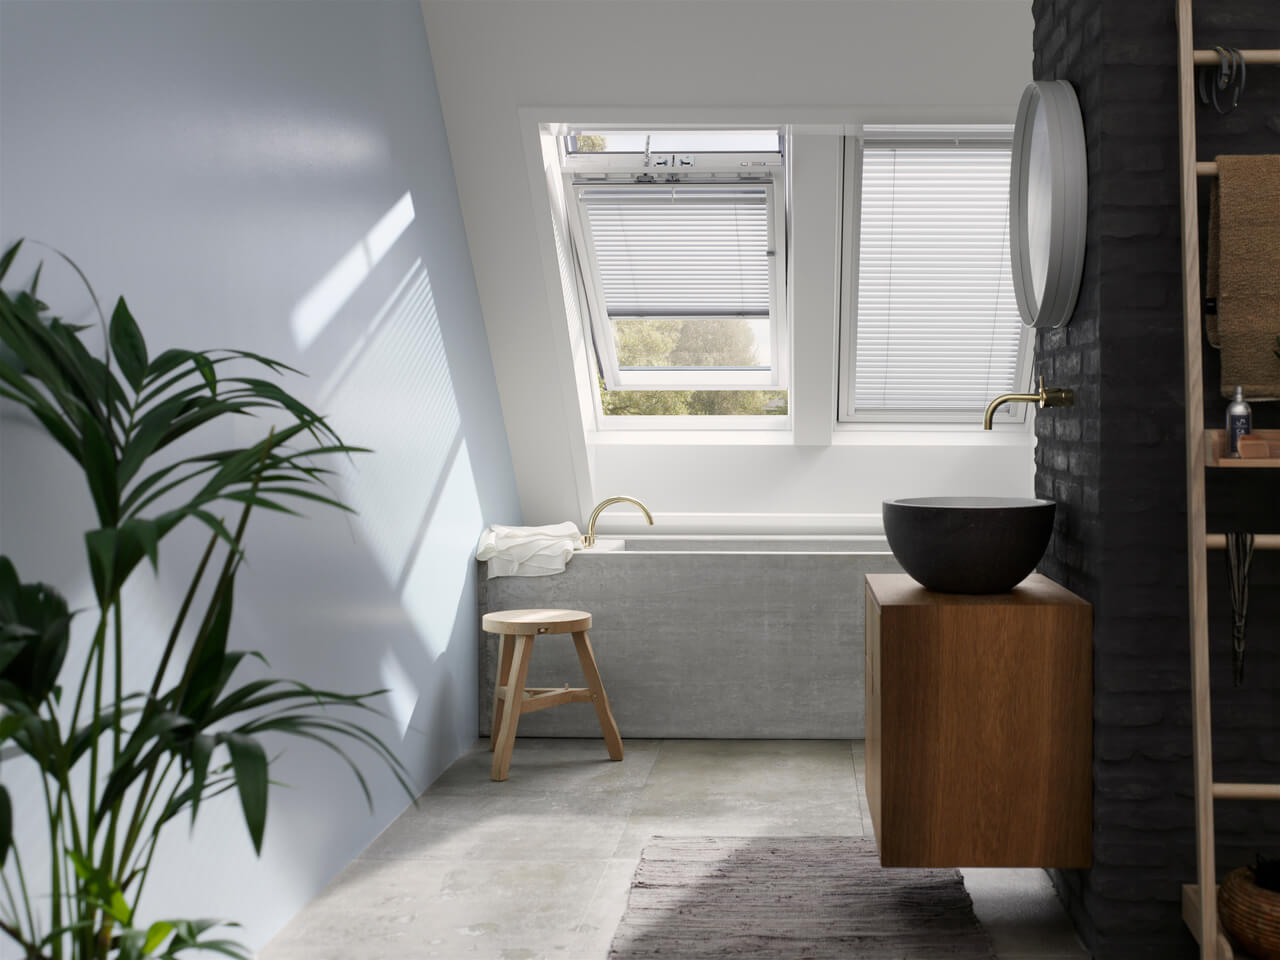 Casa de banho moderna com janela de telhado VELUX, espelho redondo e móvel de lavatório em madeira.